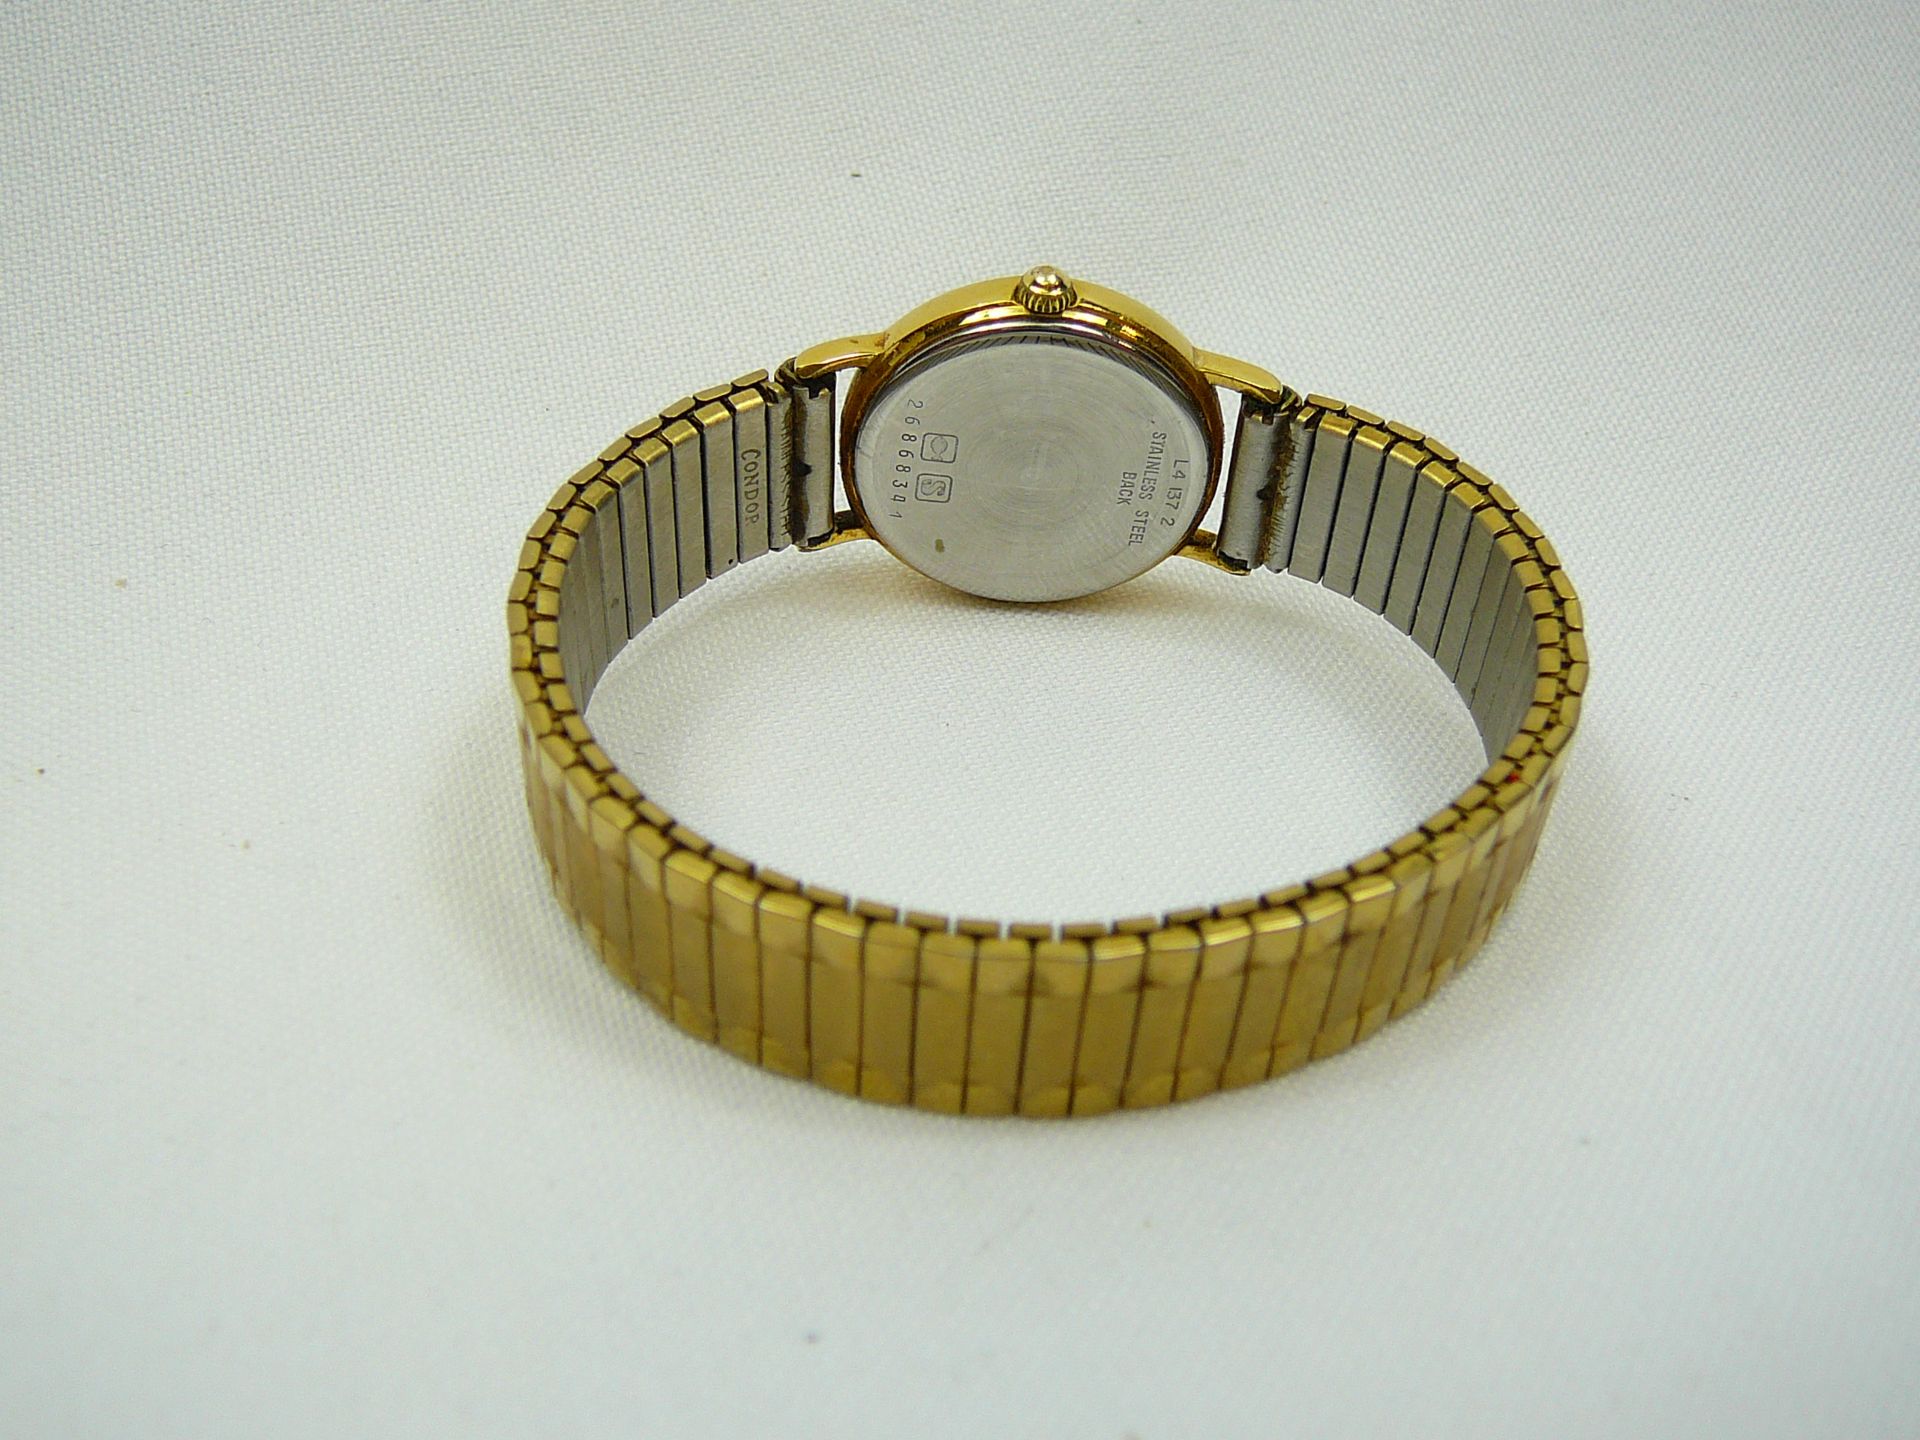 Ladies Longines Quartz Wrist Watch - Image 3 of 3